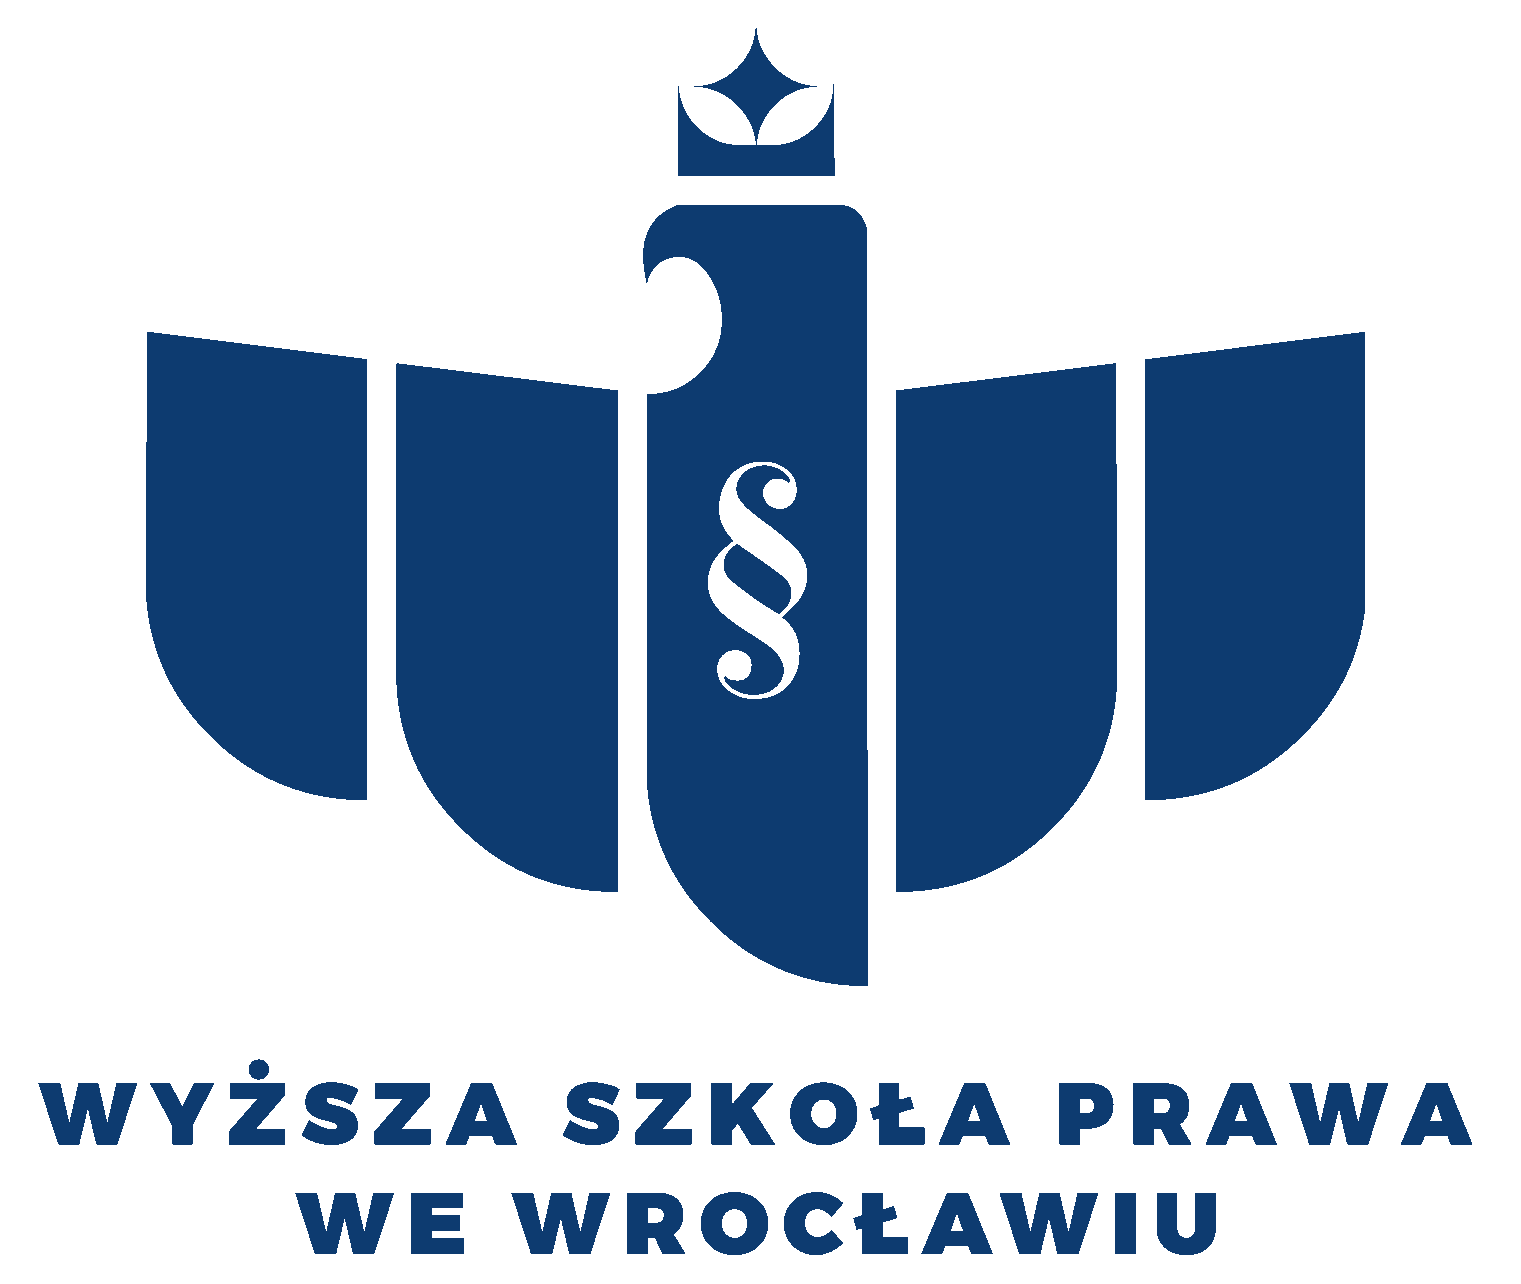 Wyższa Szkoła Prawa (WSP) we Wrocławiu logo